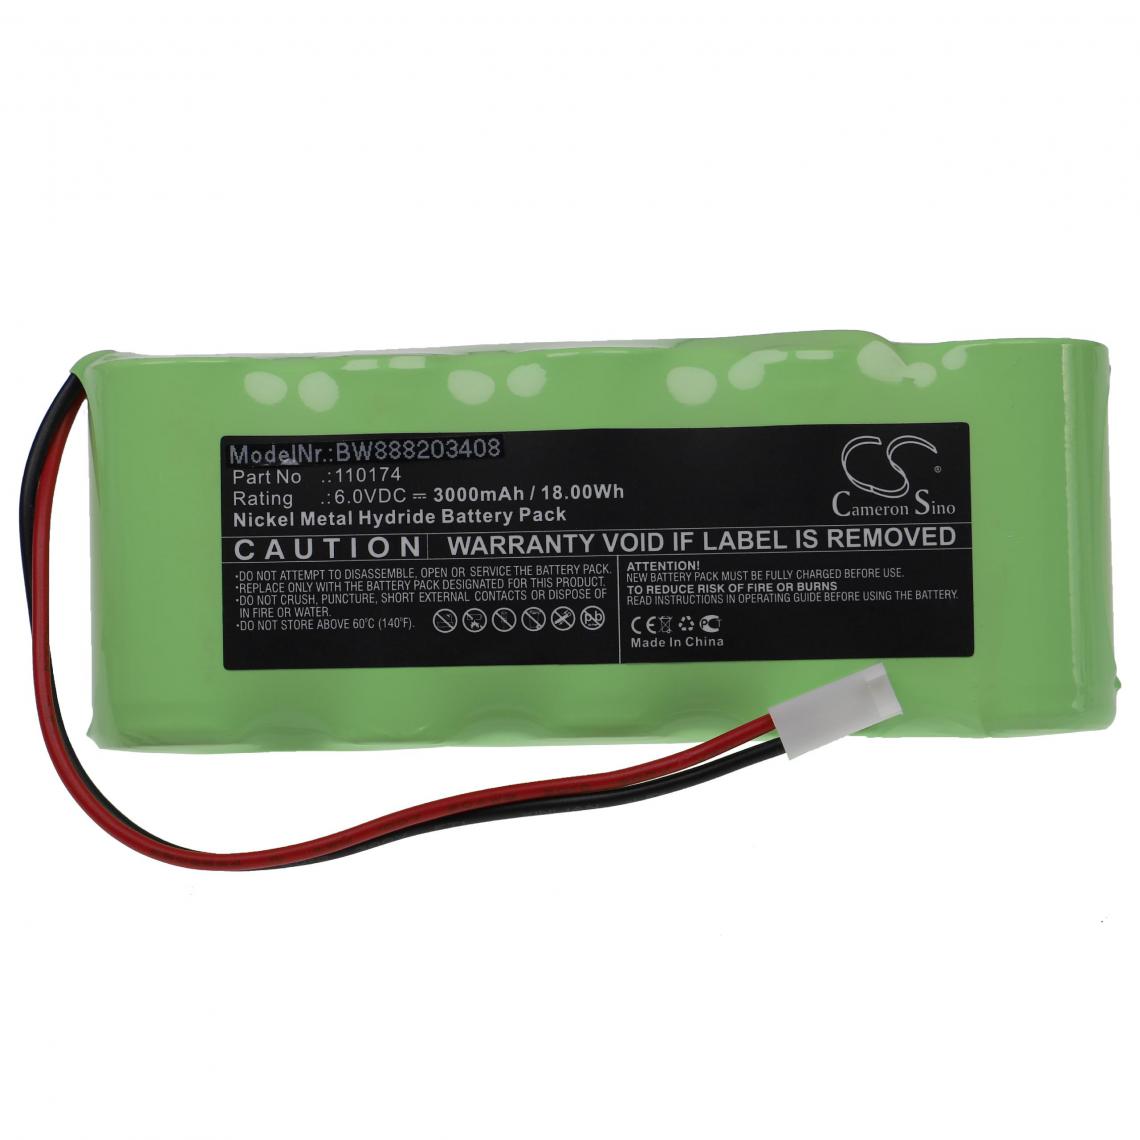 Vhbw - vhbw Batterie remplacement pour Nonin 110174 pour appareil médical (3000mAh, 6V, NiMH) - Piles spécifiques